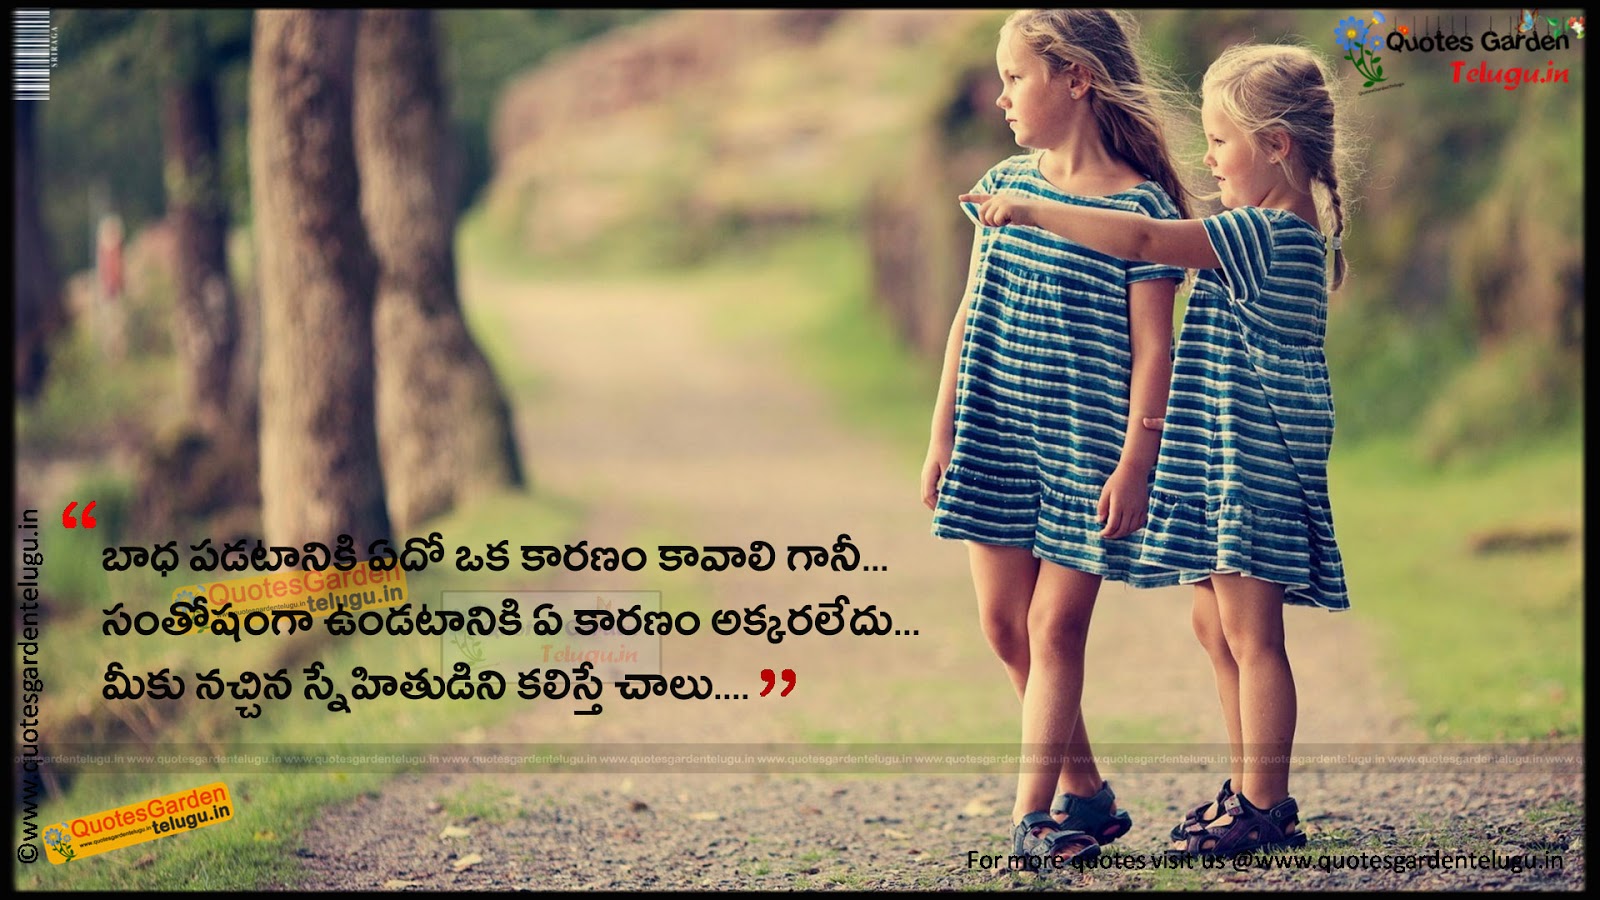 Beautiful friendship quotes in telugu 1211 | QUOTES GARDEN TELUGU ...